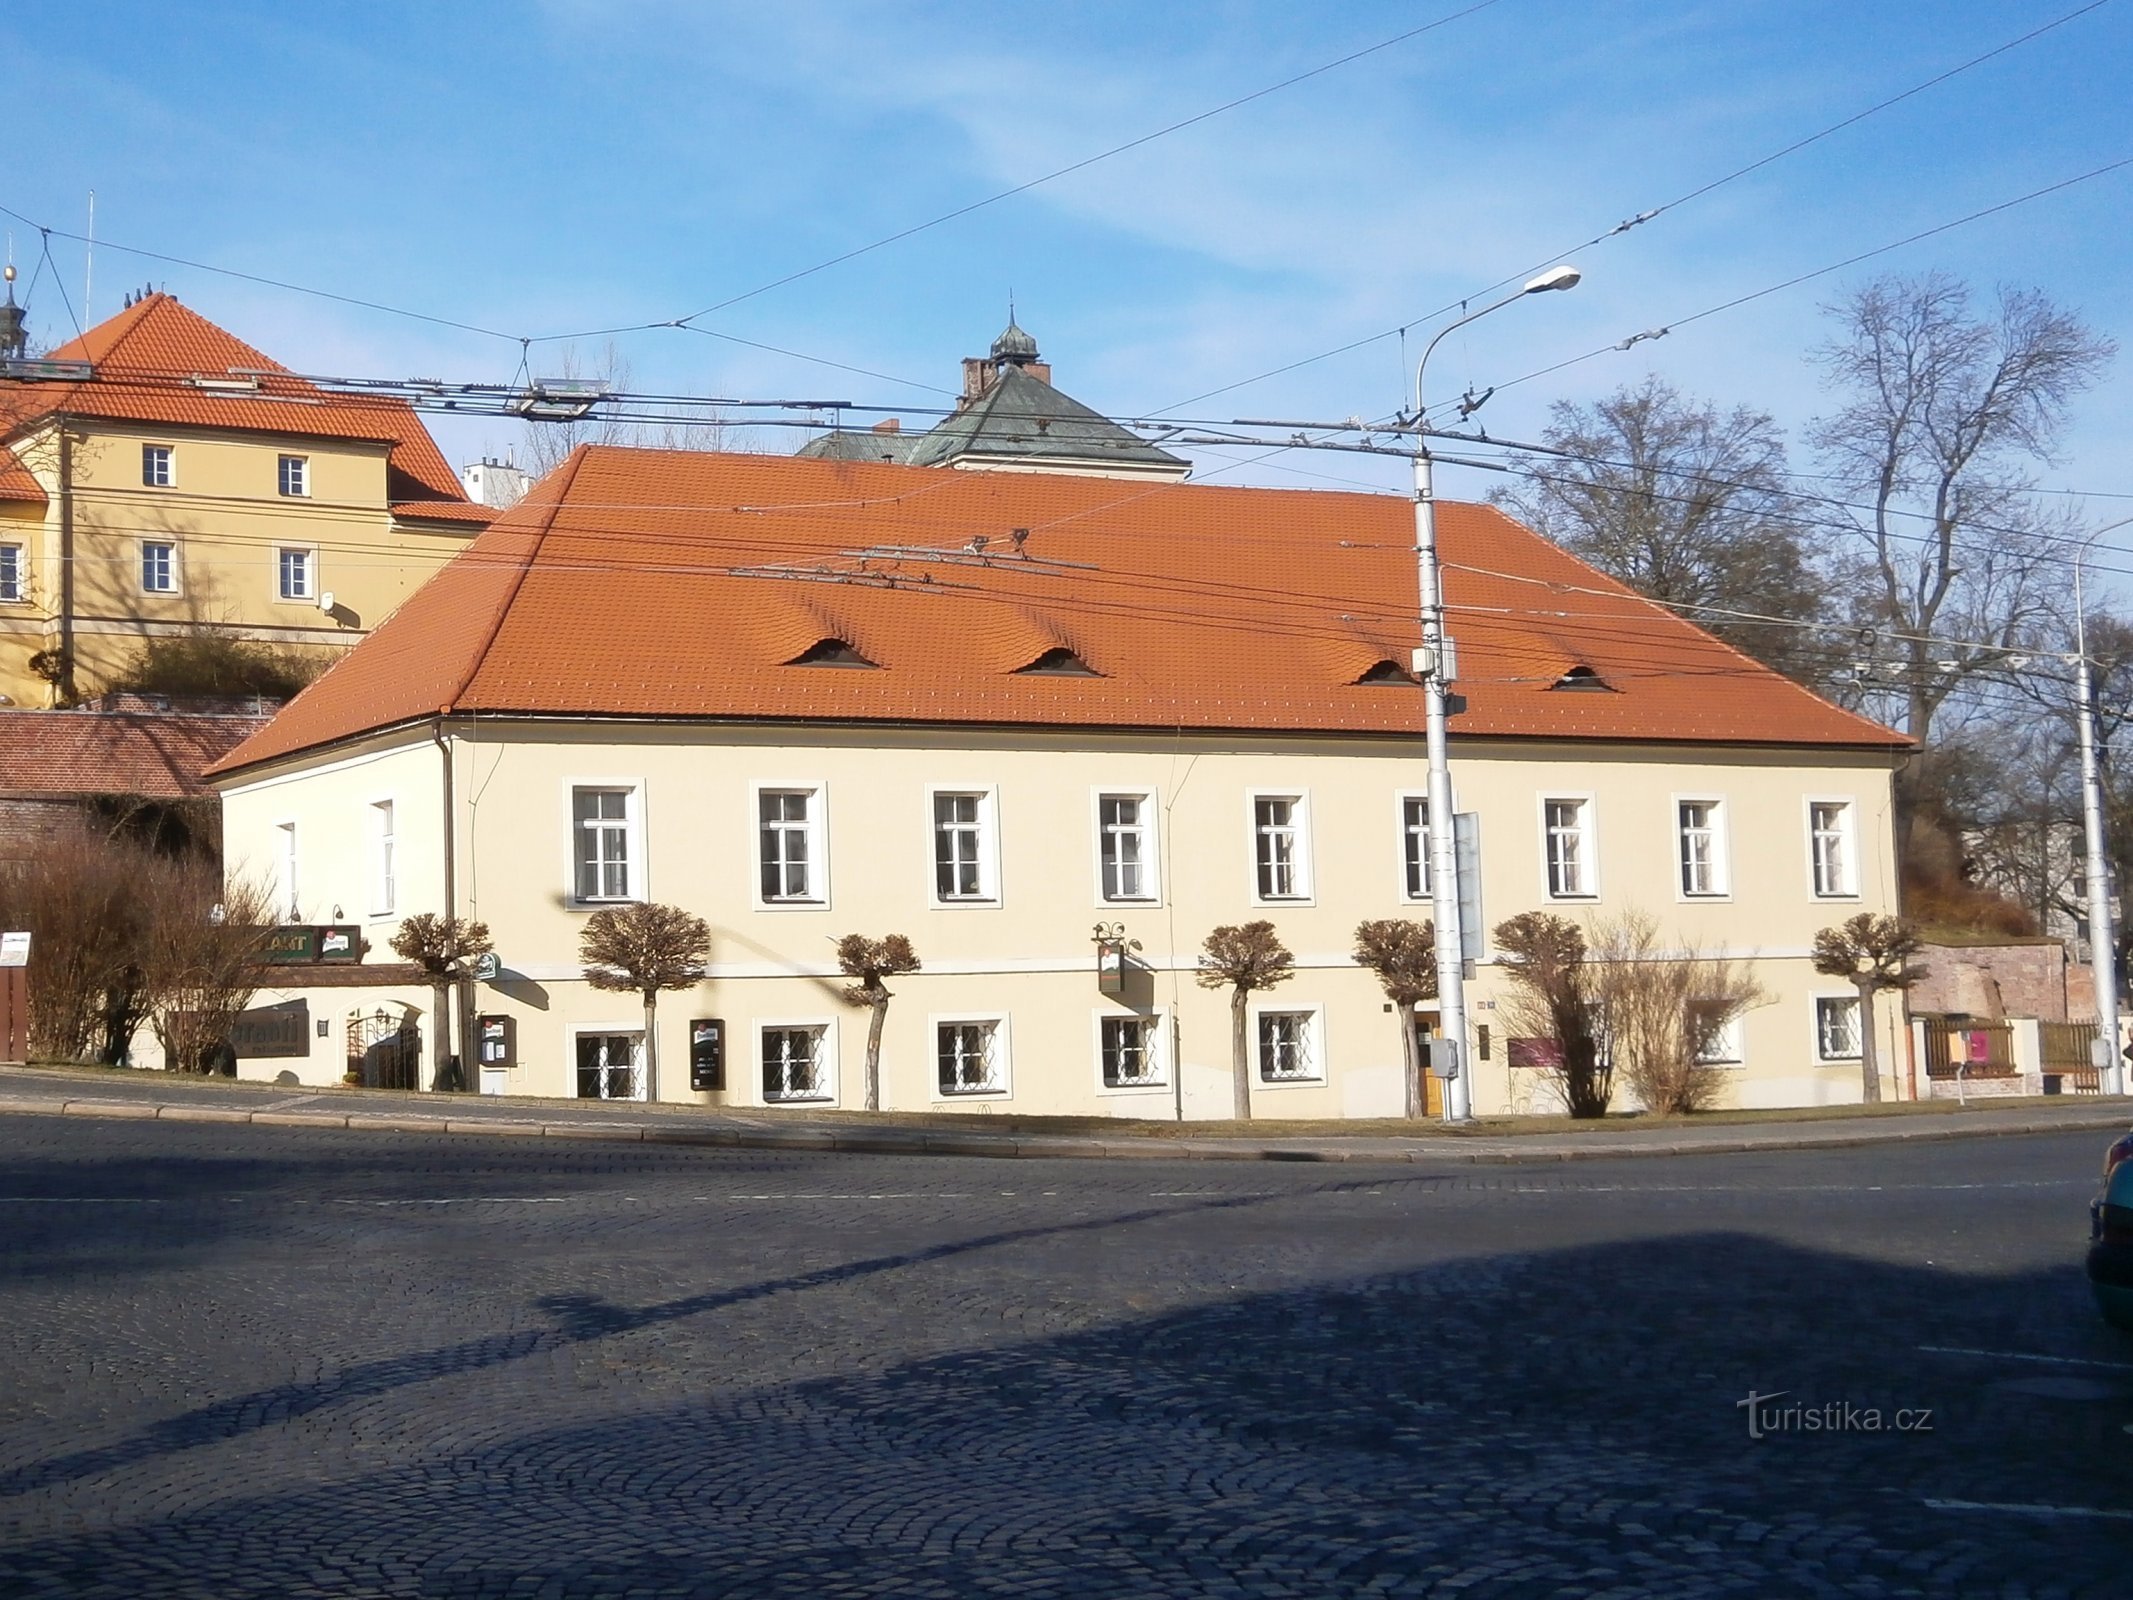 Dirección de Ingeniería (Hradec Králové, 8.2.2014 de julio de XNUMX)